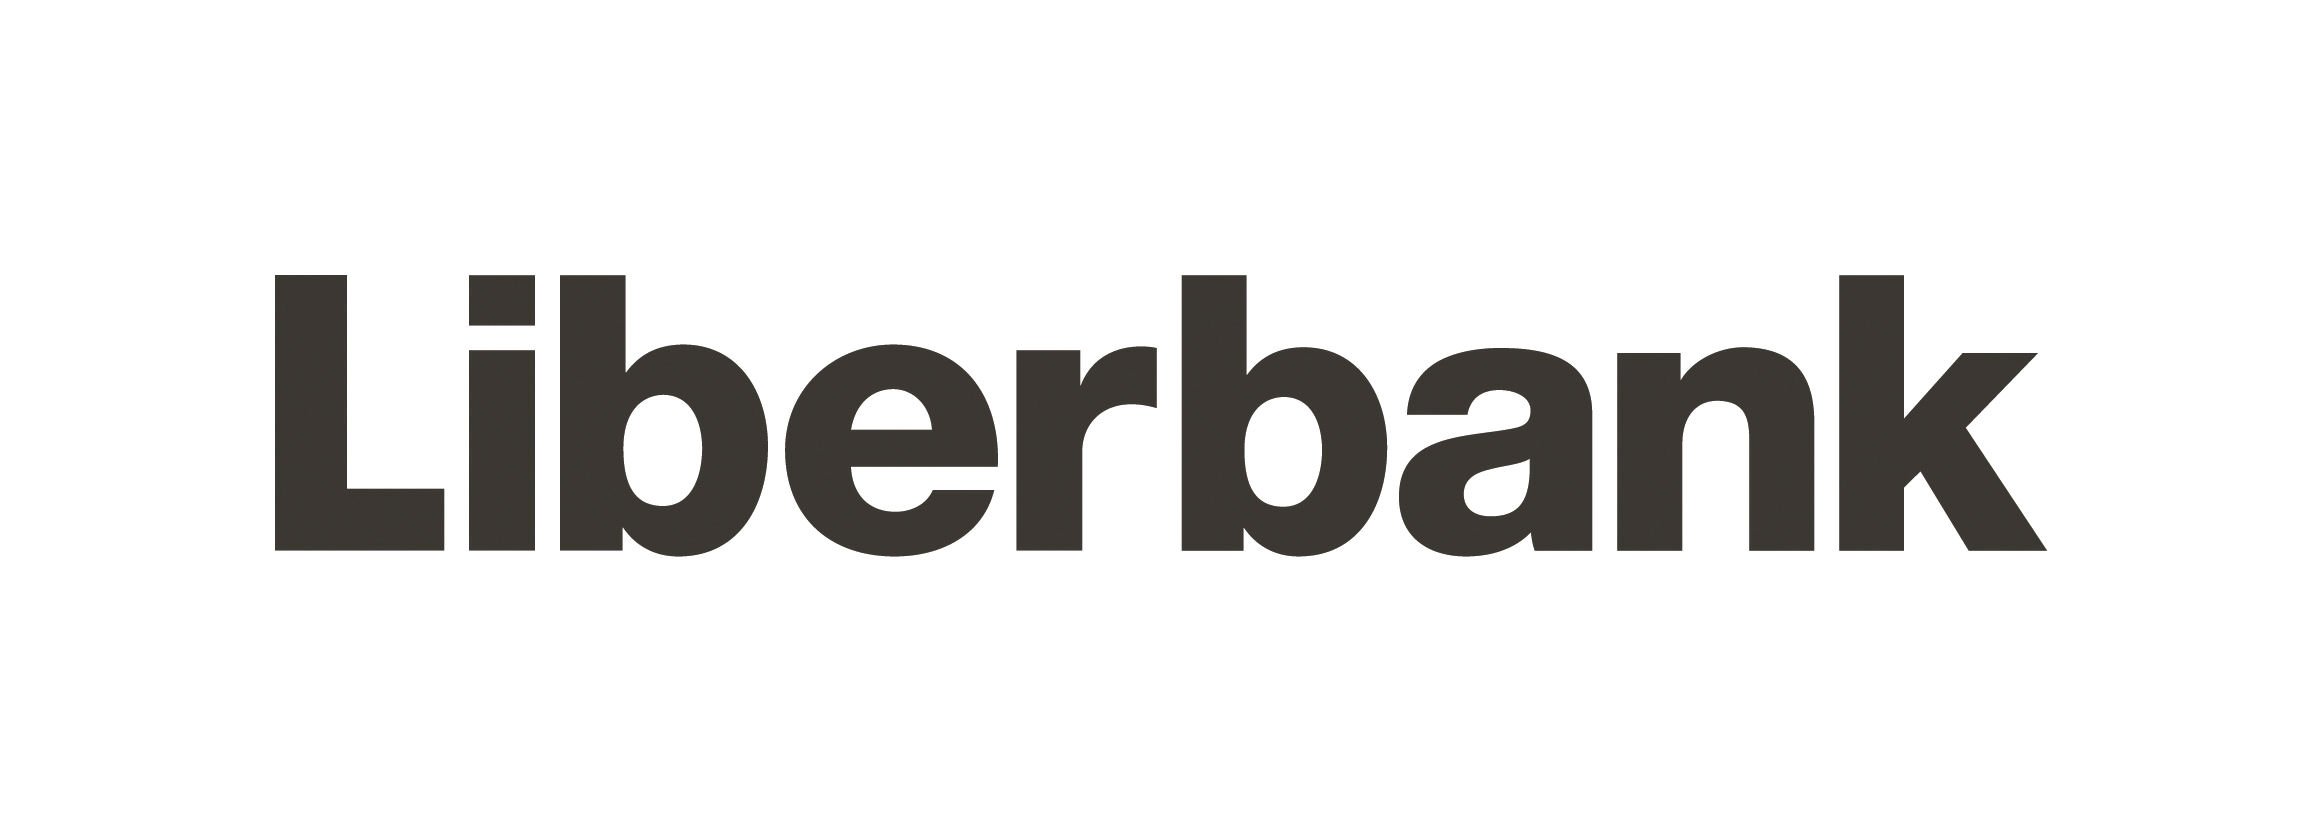 Liberbank uno de los valores estrella de agosto